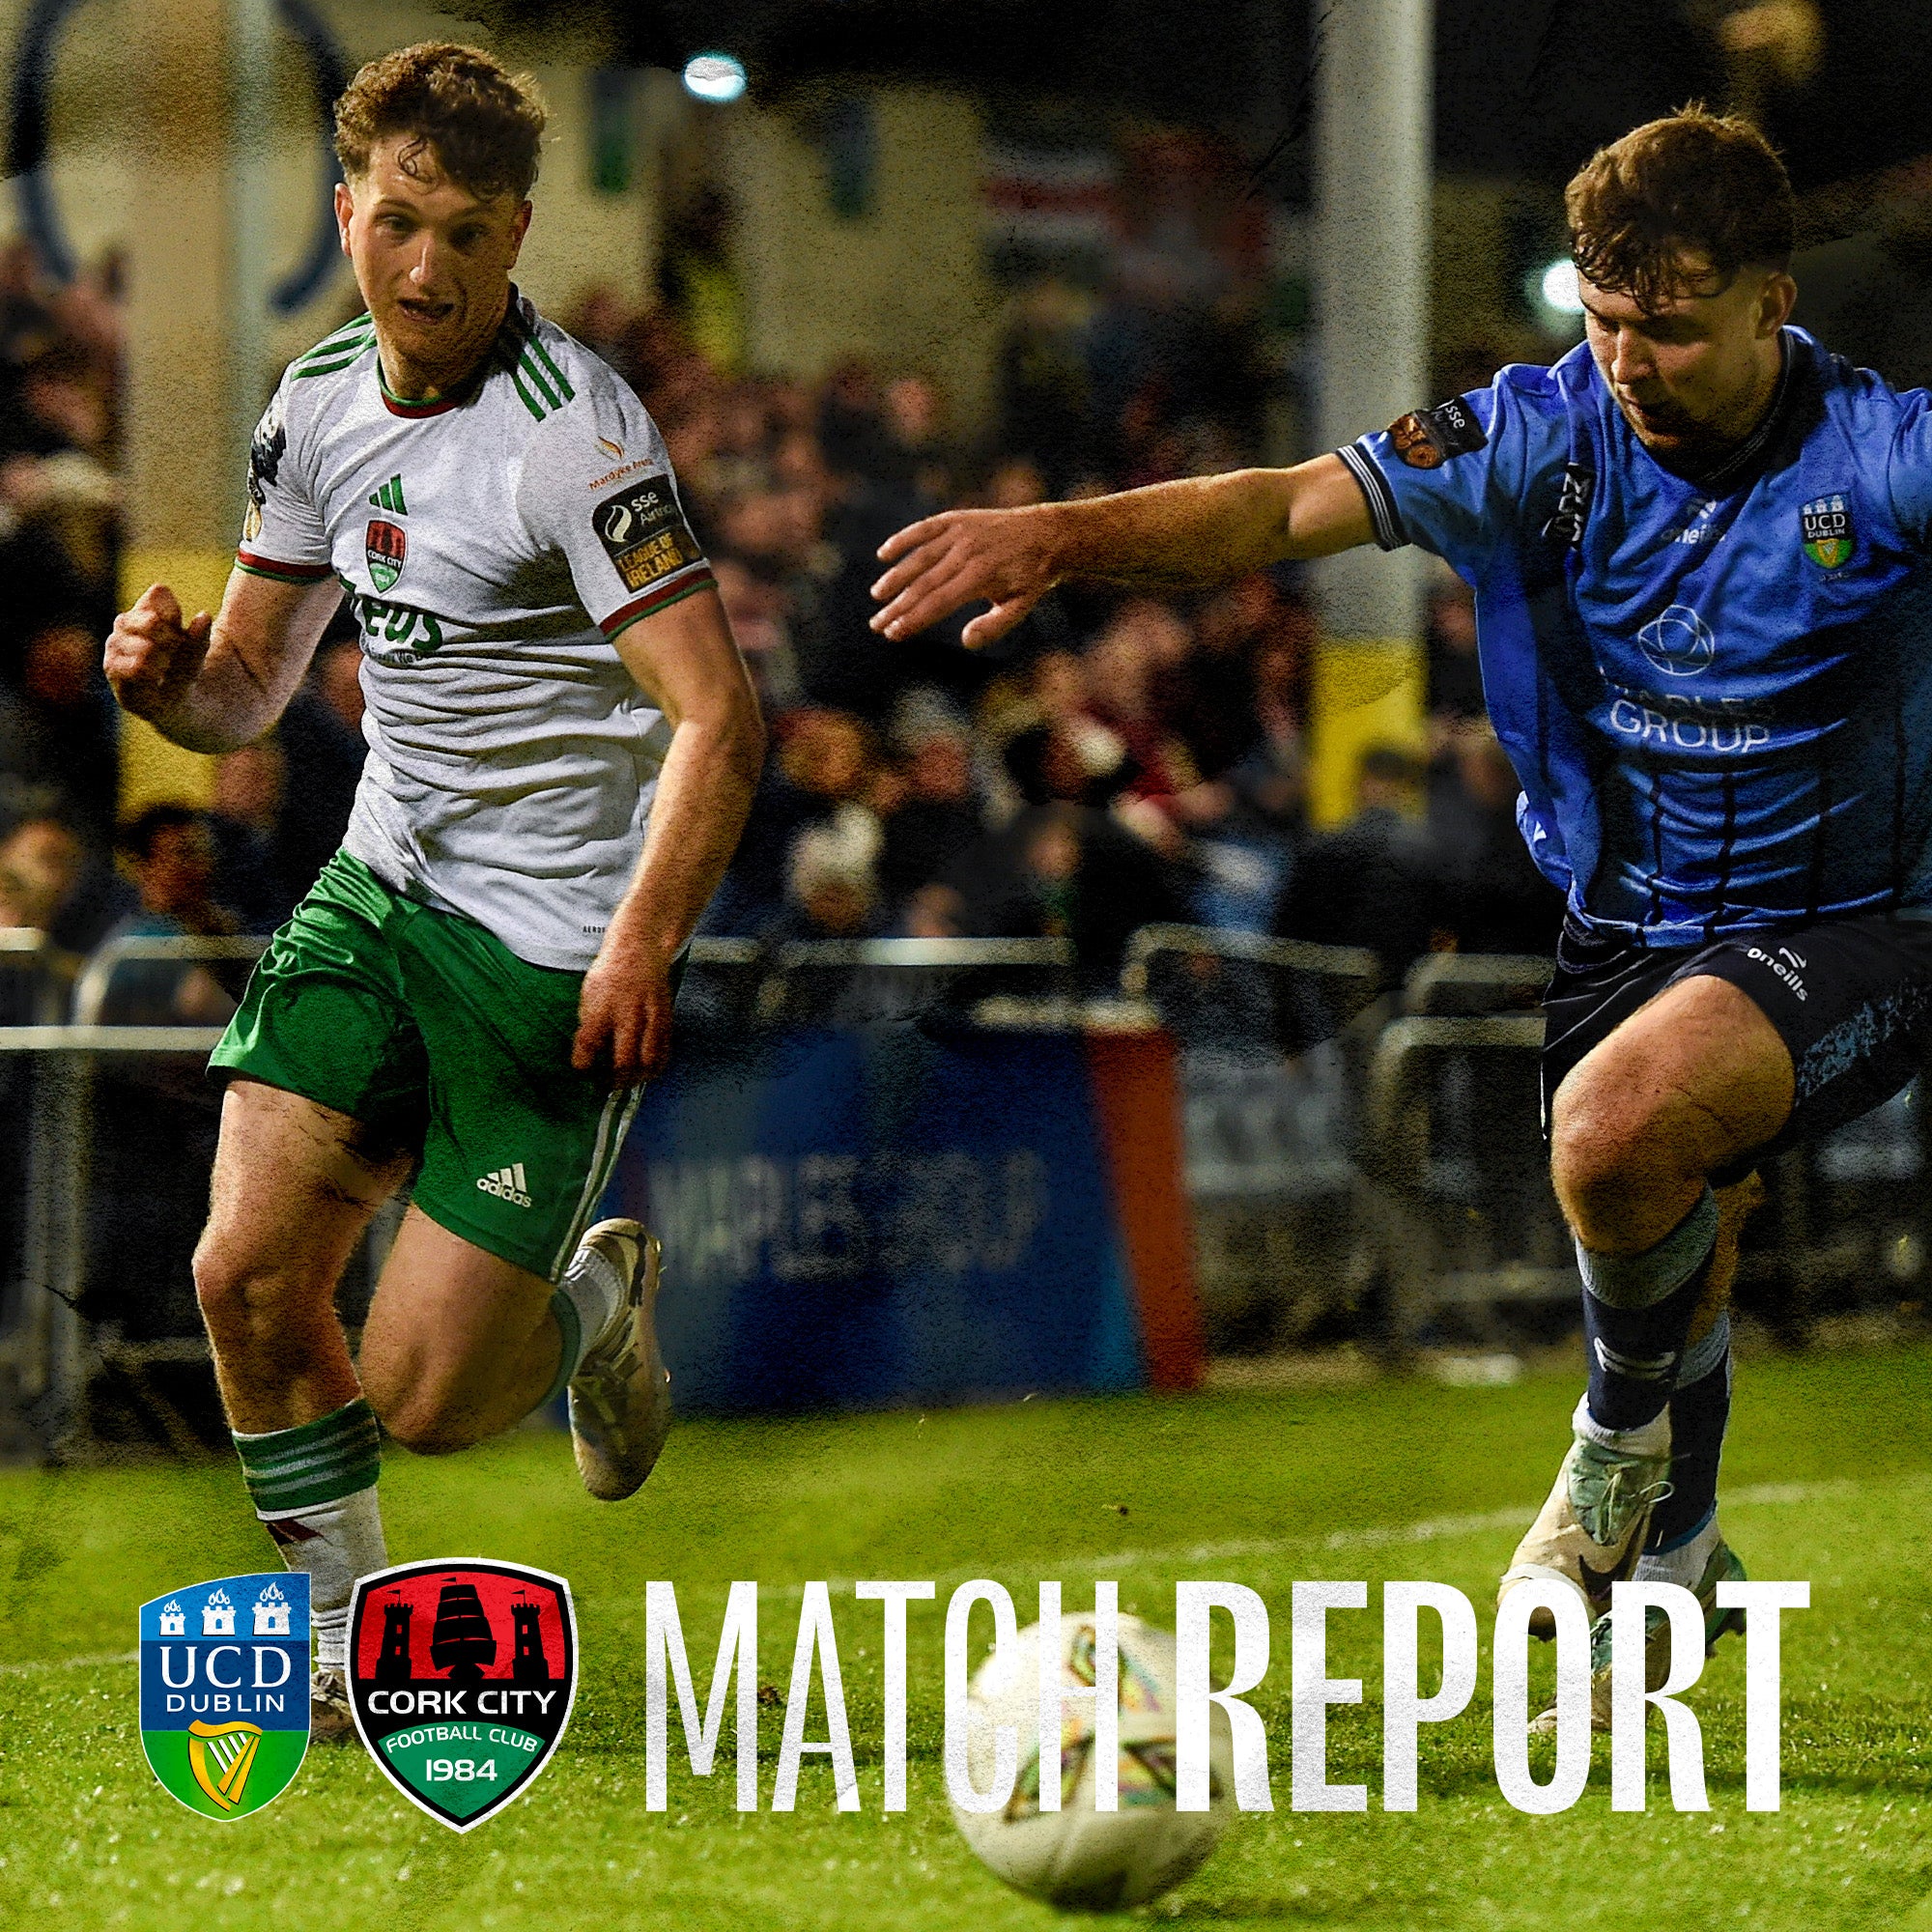 Match Report: UCD 0-0 Cork City